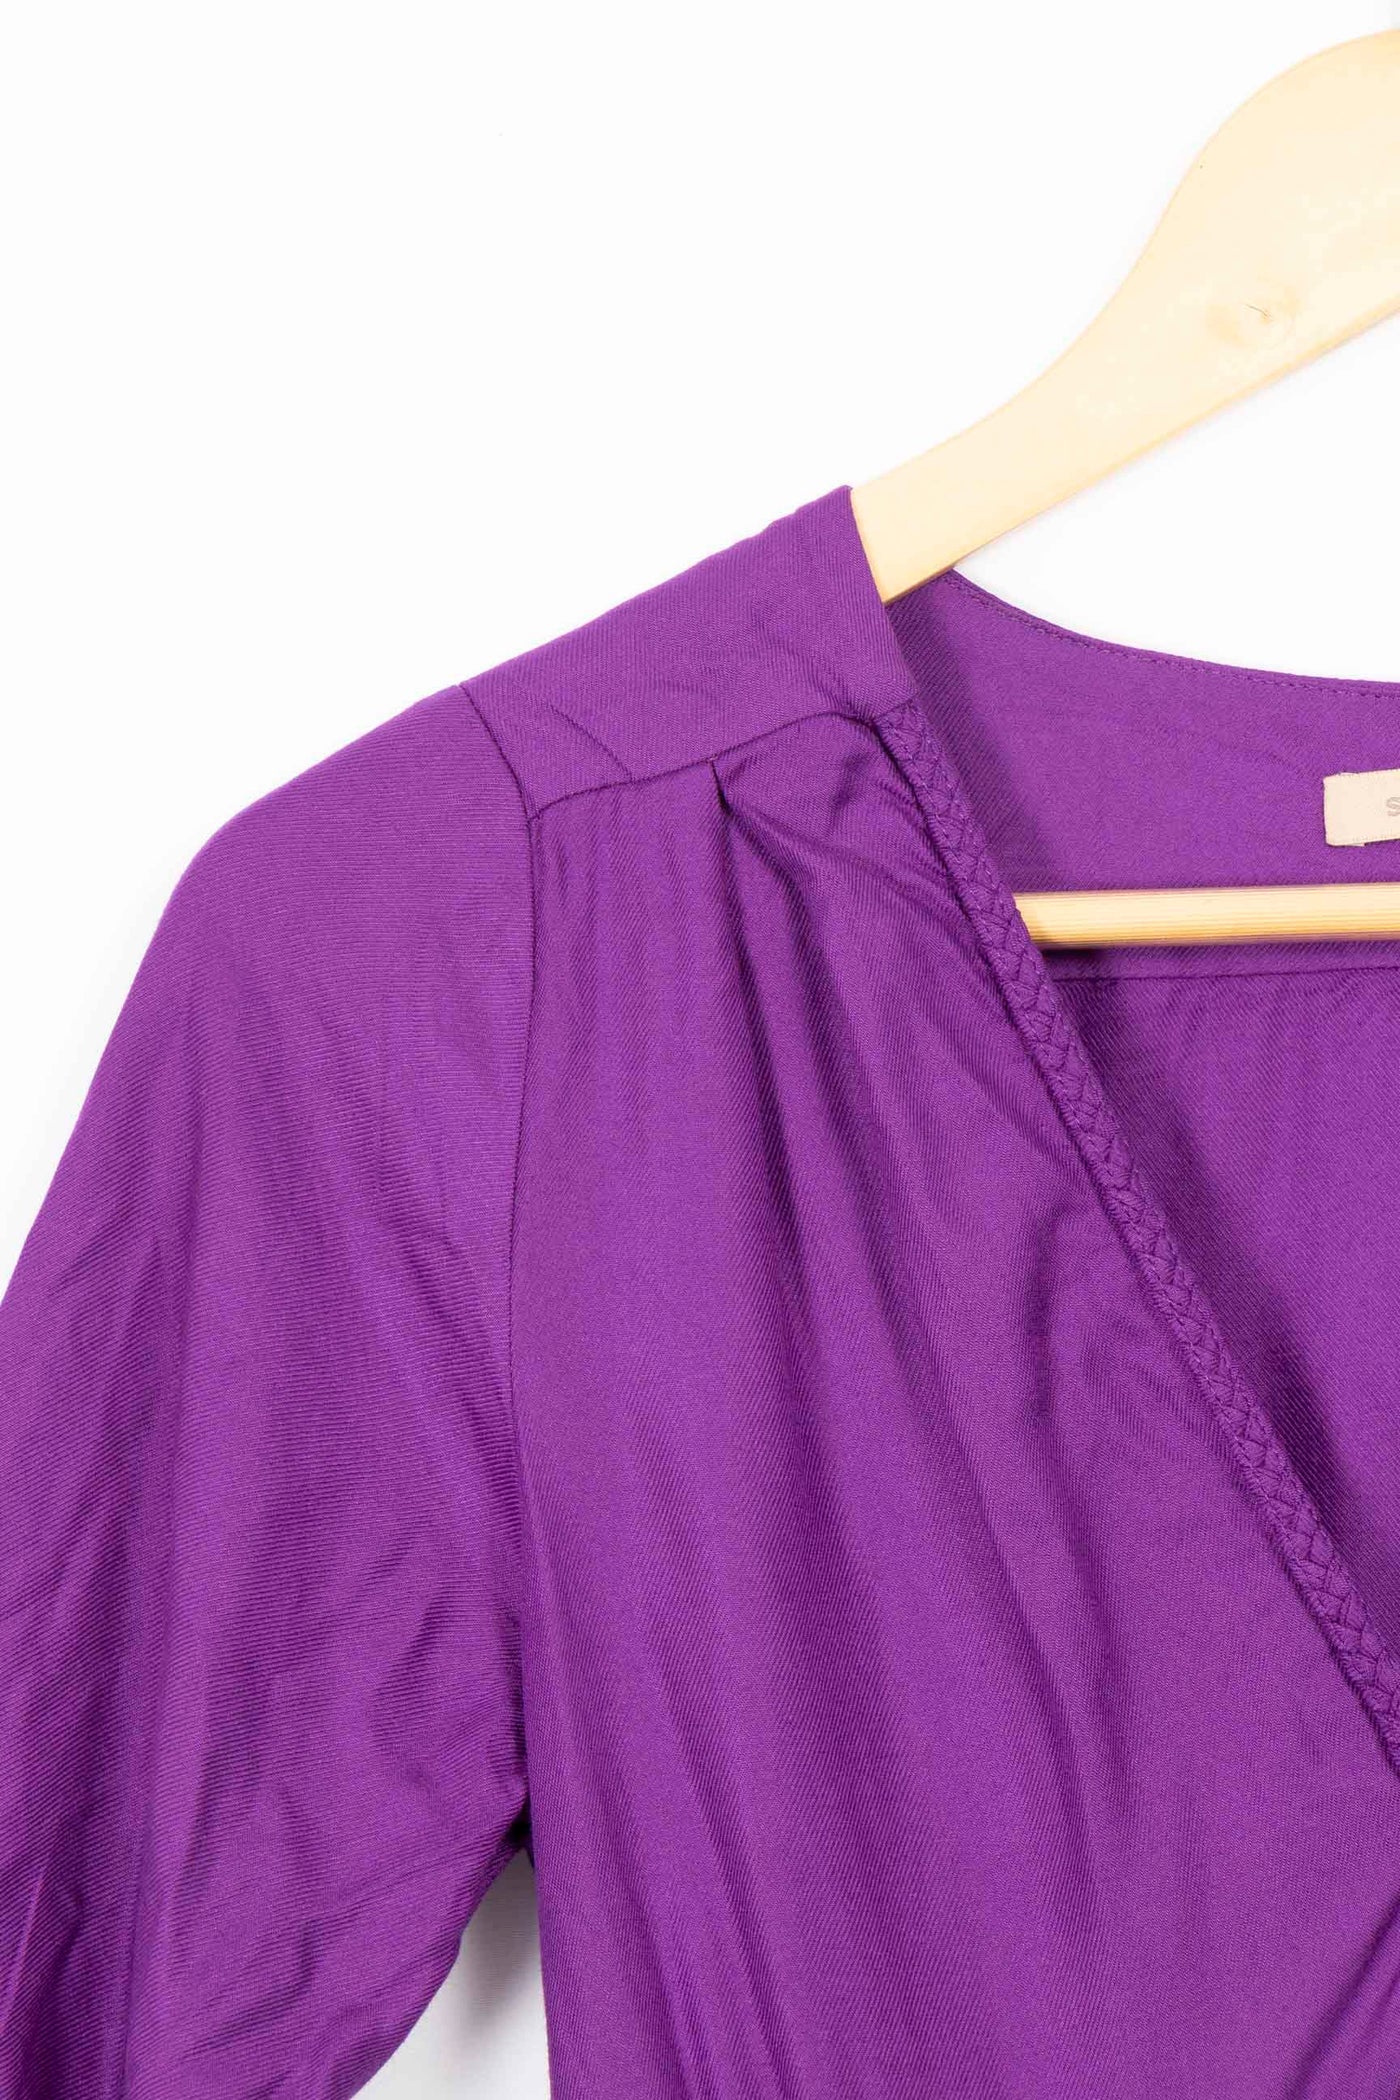 Robe courte violette - T2